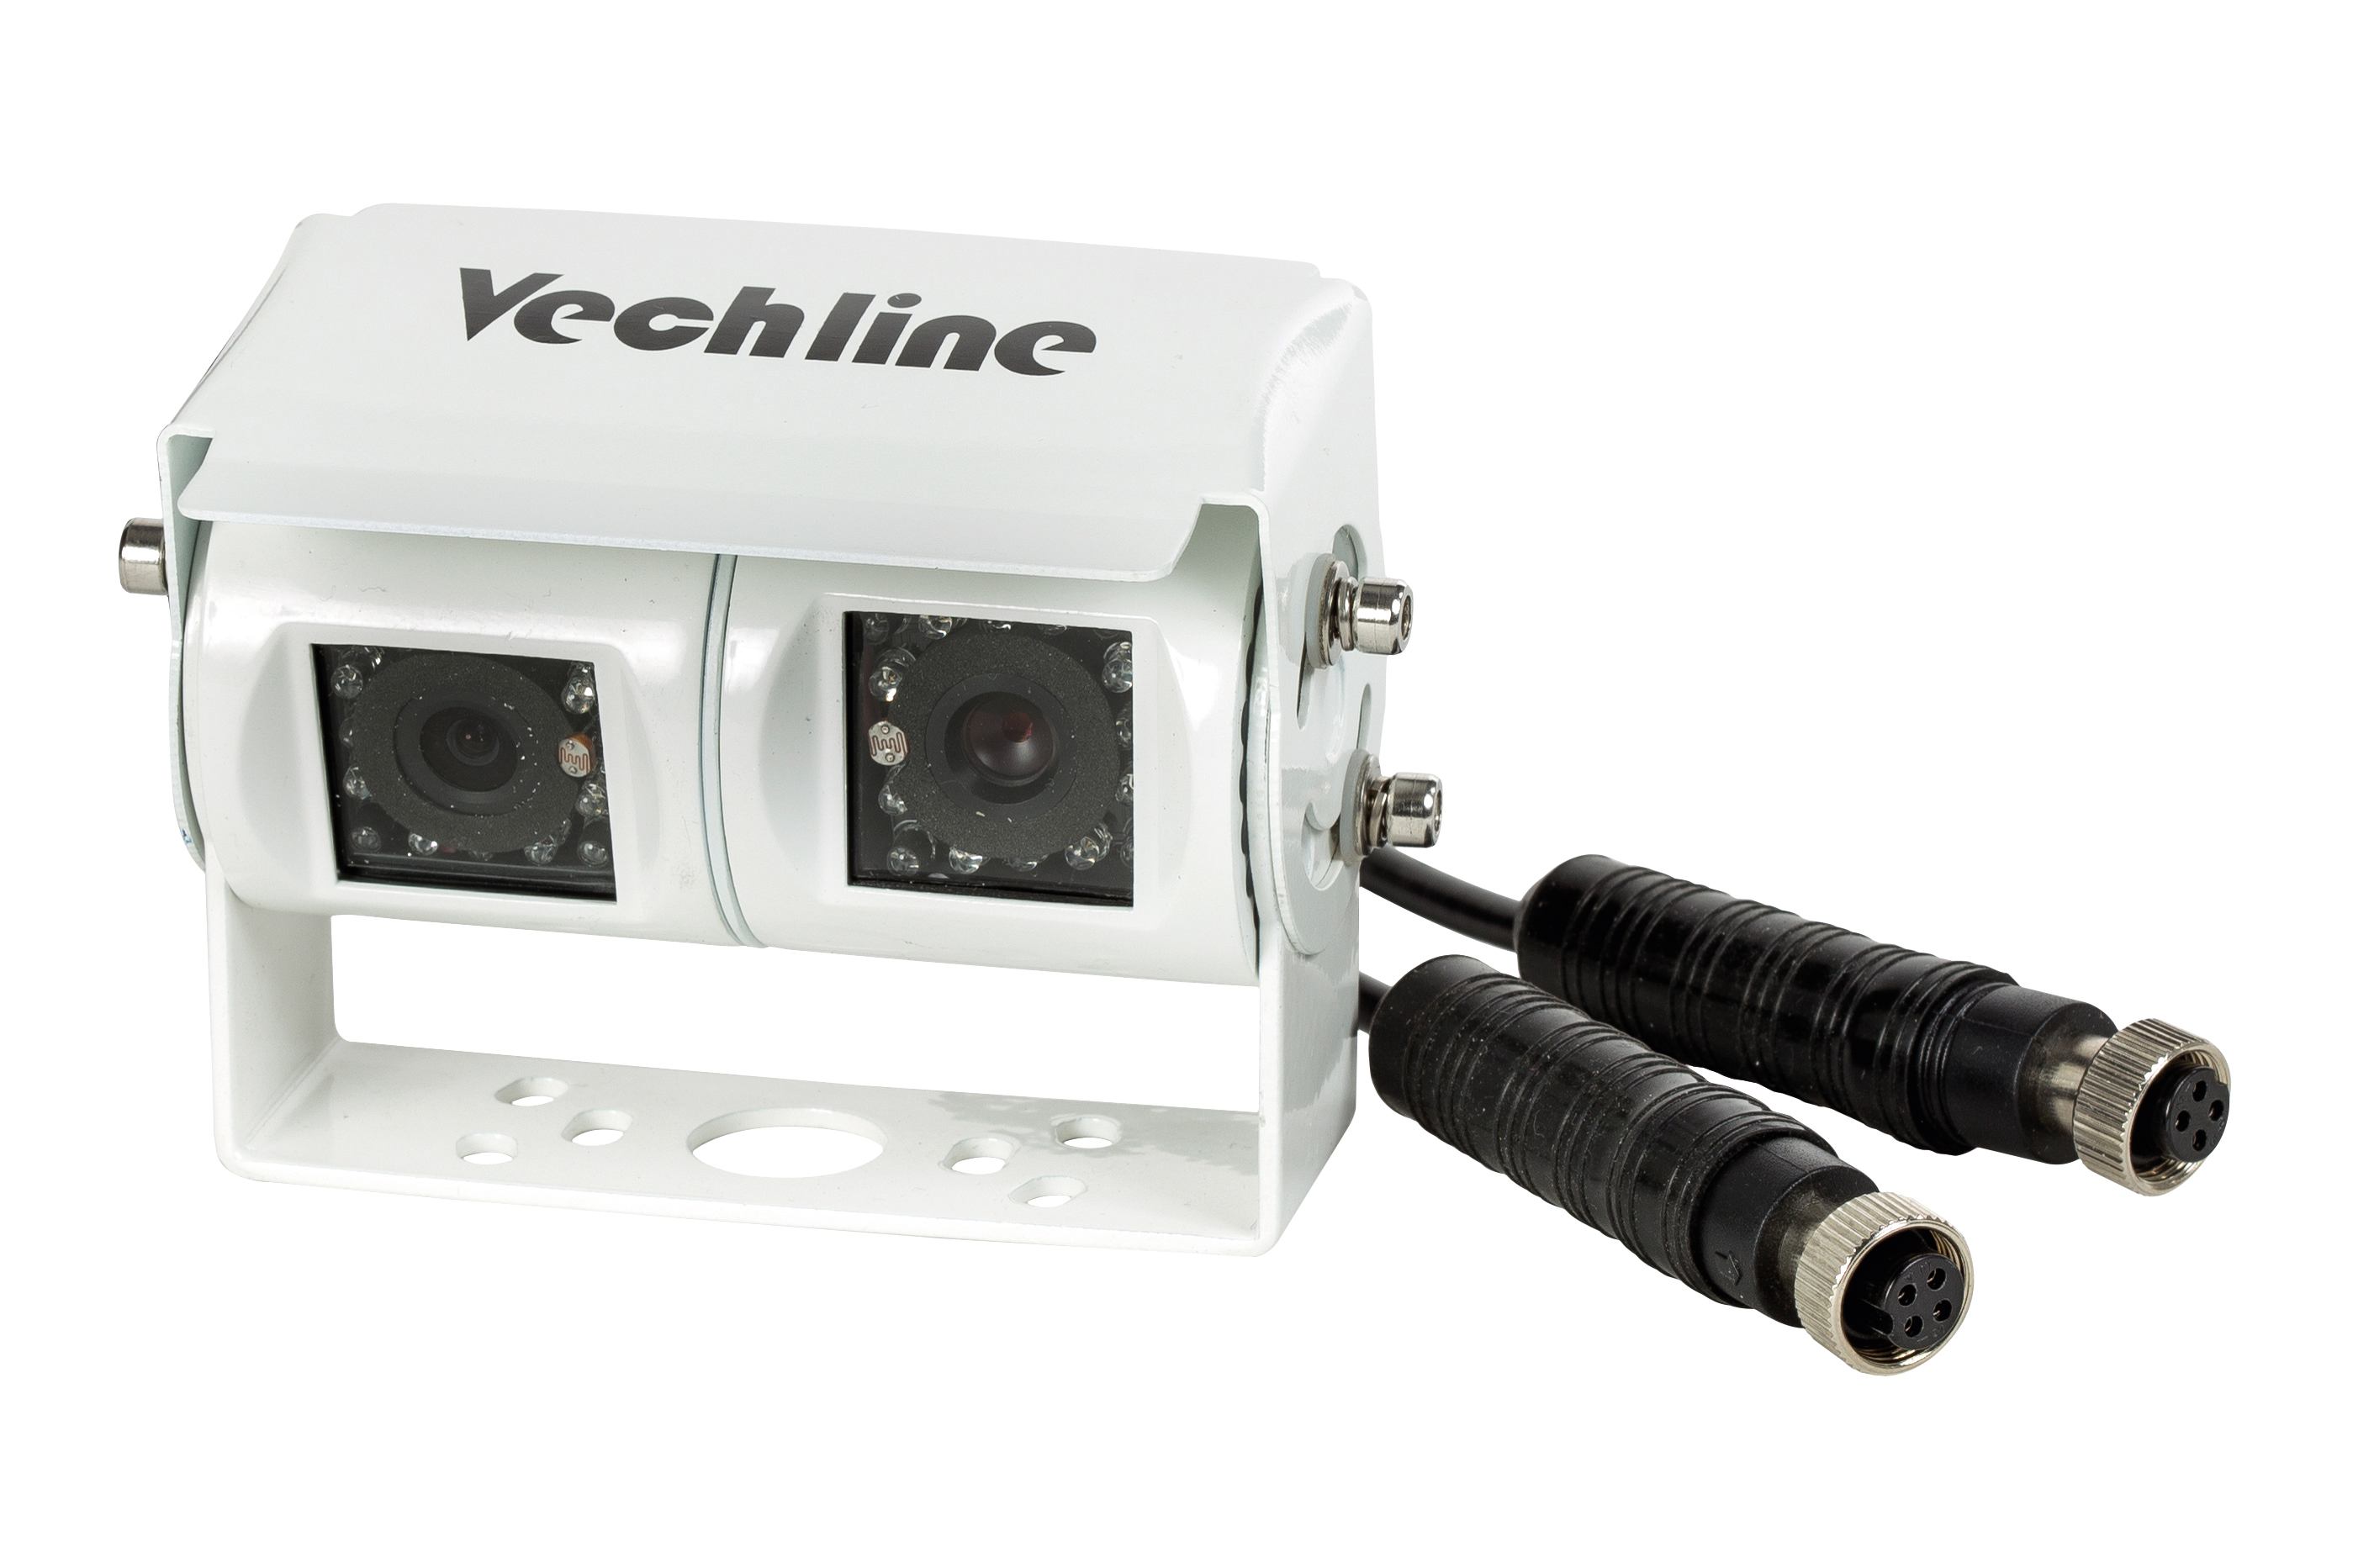 Vechline Doppelkamera VECH-D01